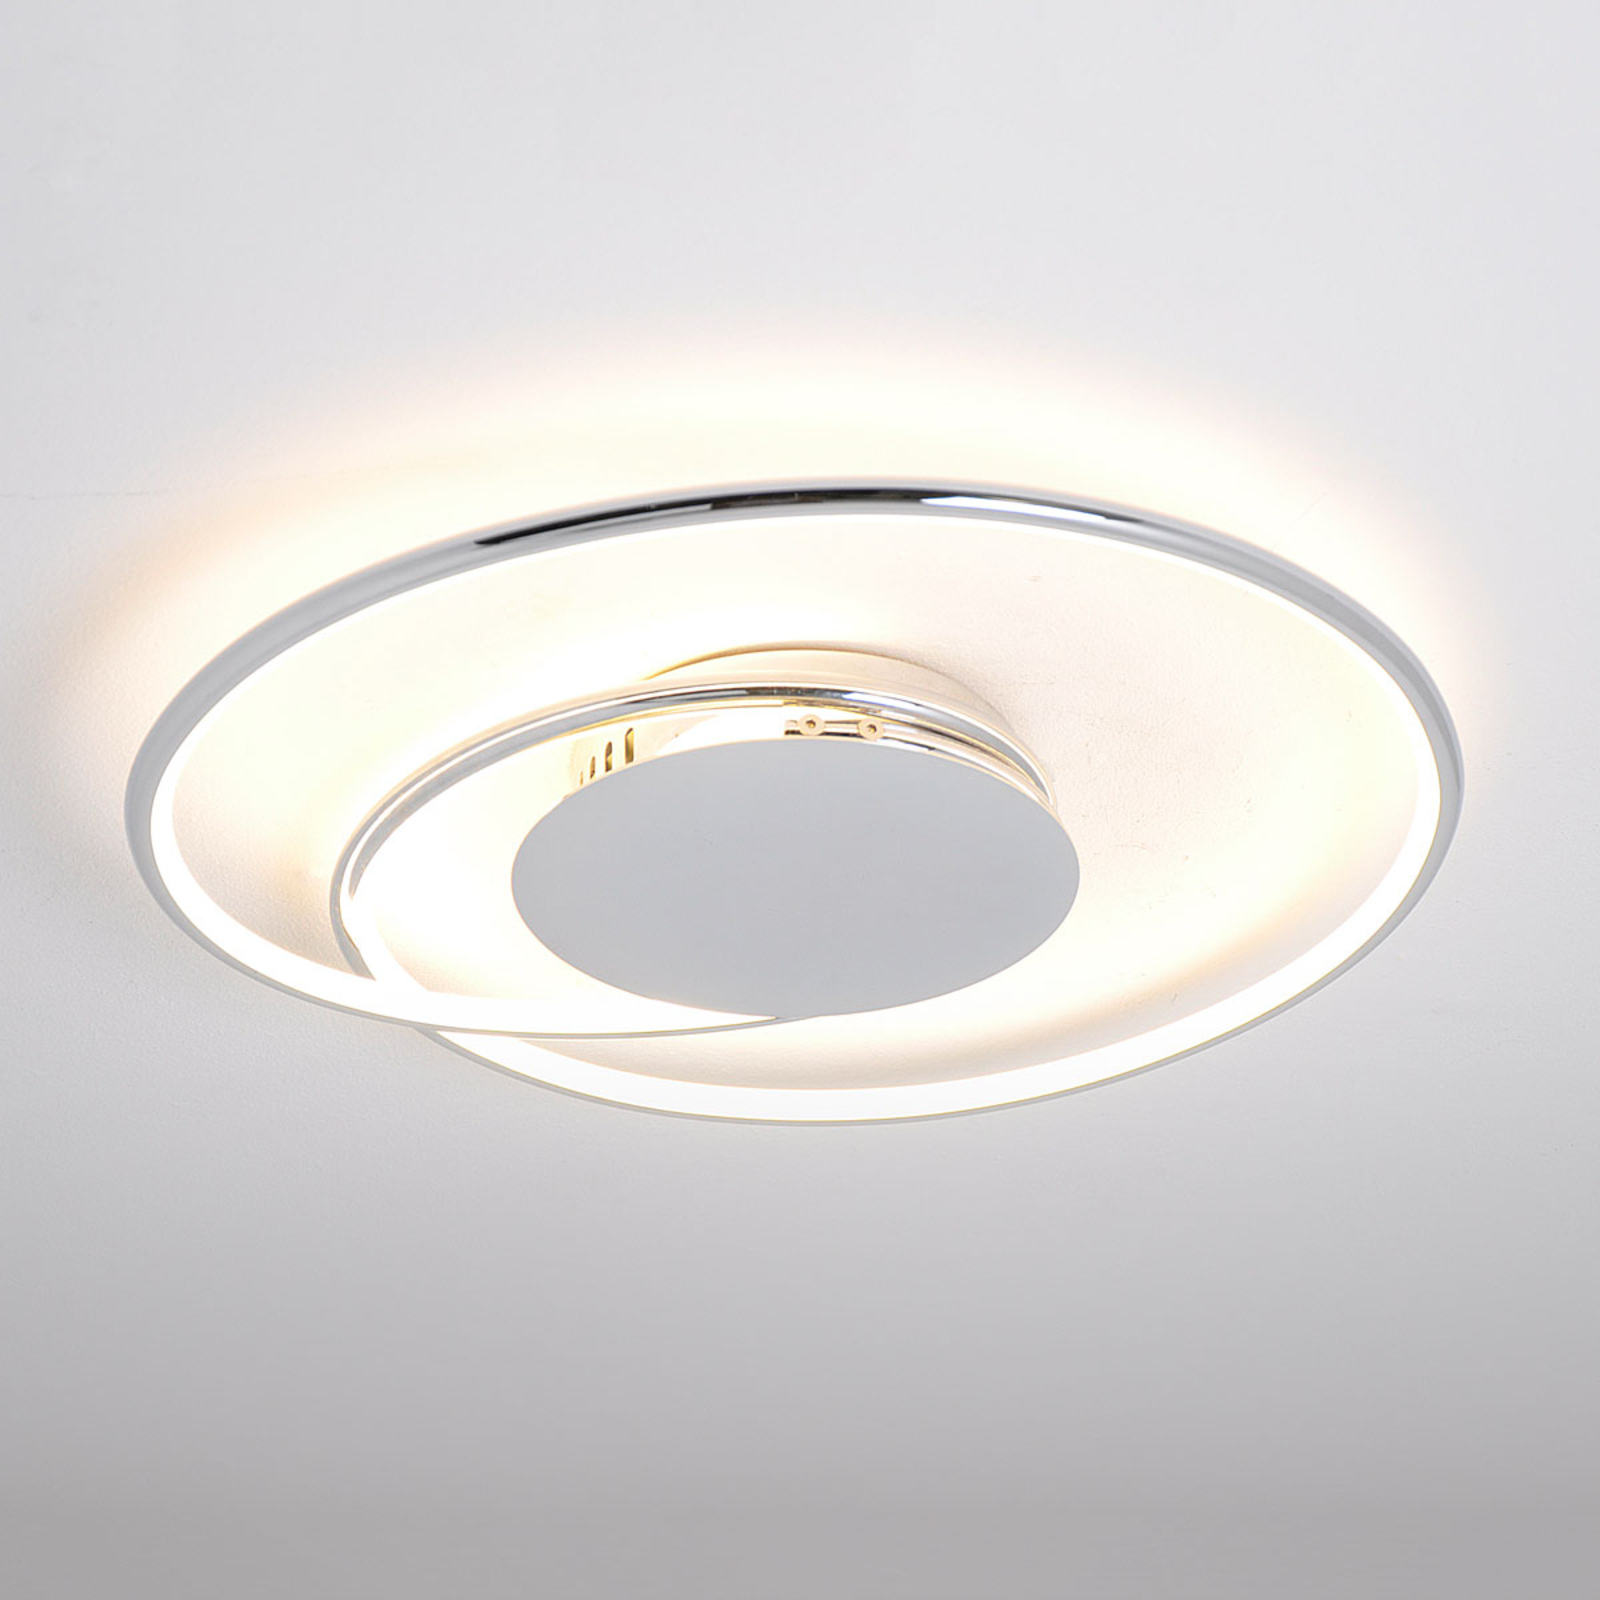 LED-Deckenlampe Joline, chrom, 46 cm